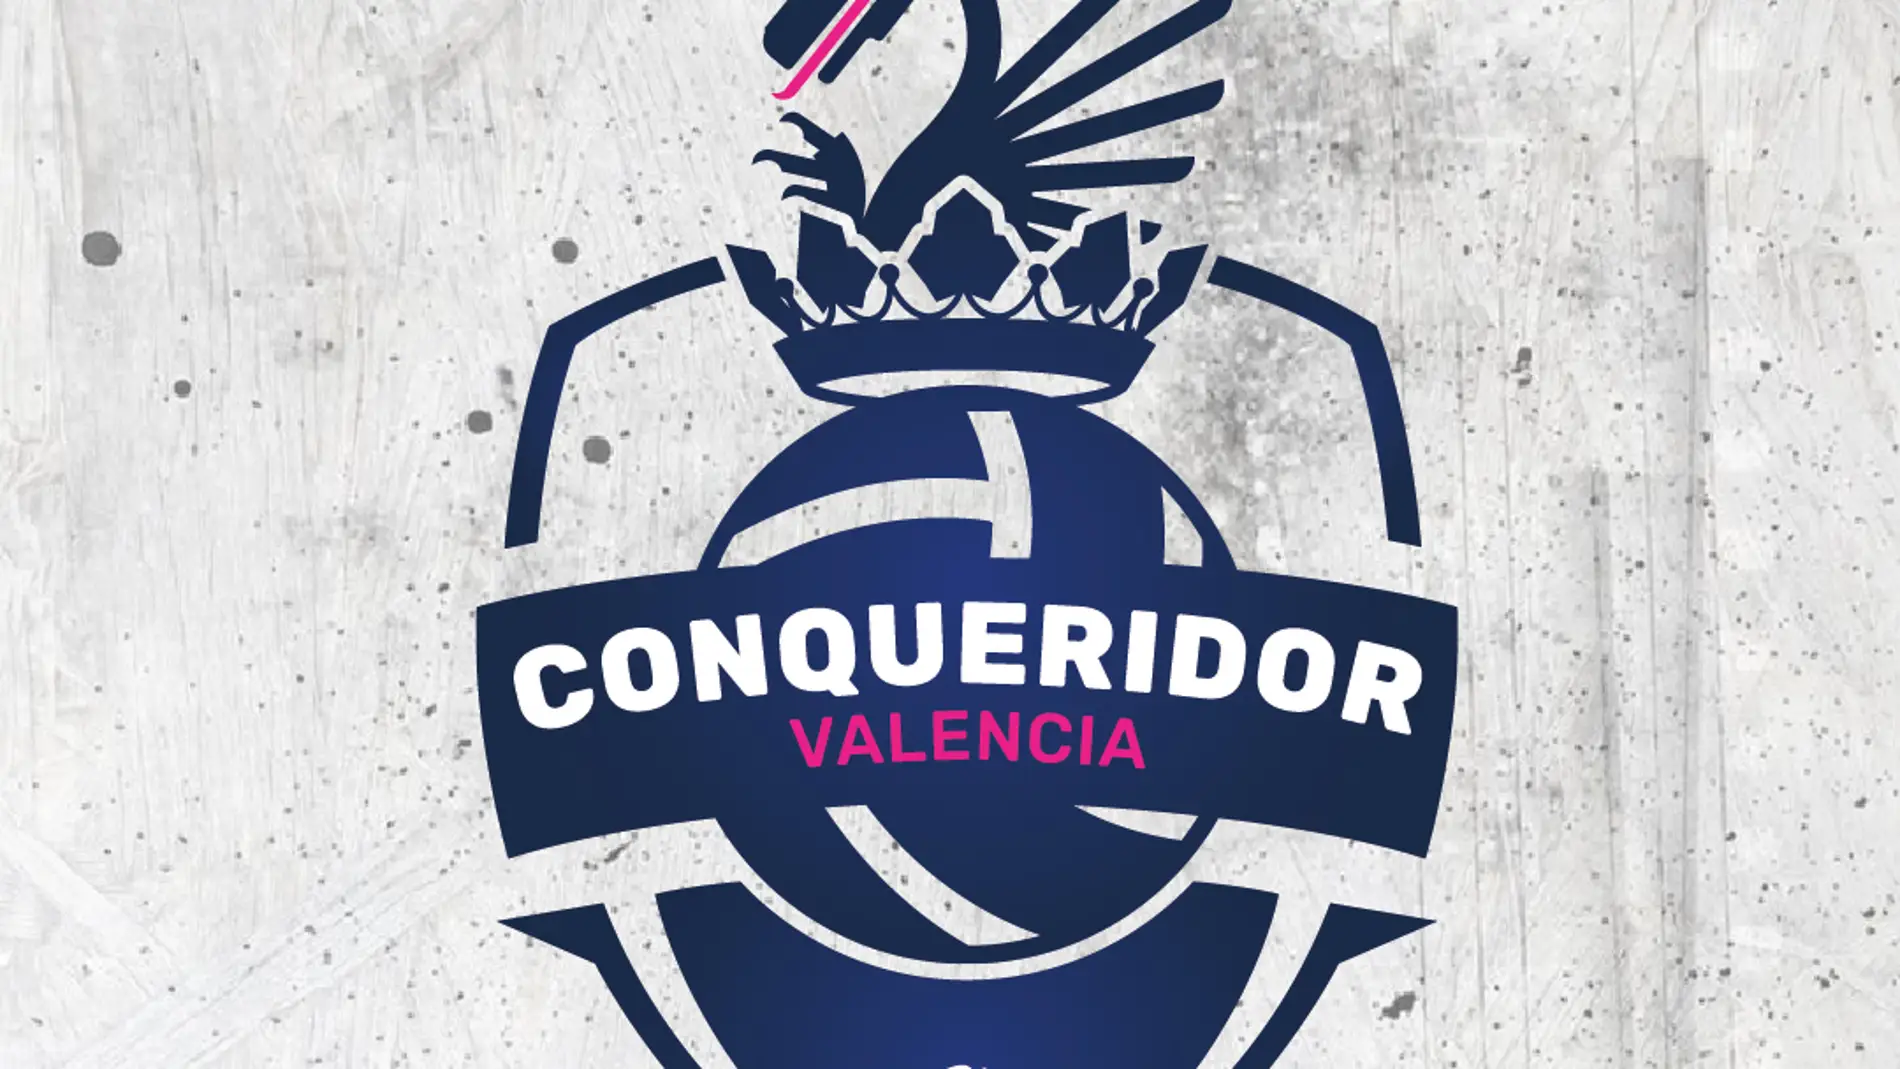 Léleman Conqueridor Valencia renace como equipo de la Superliga de voleibol masculina